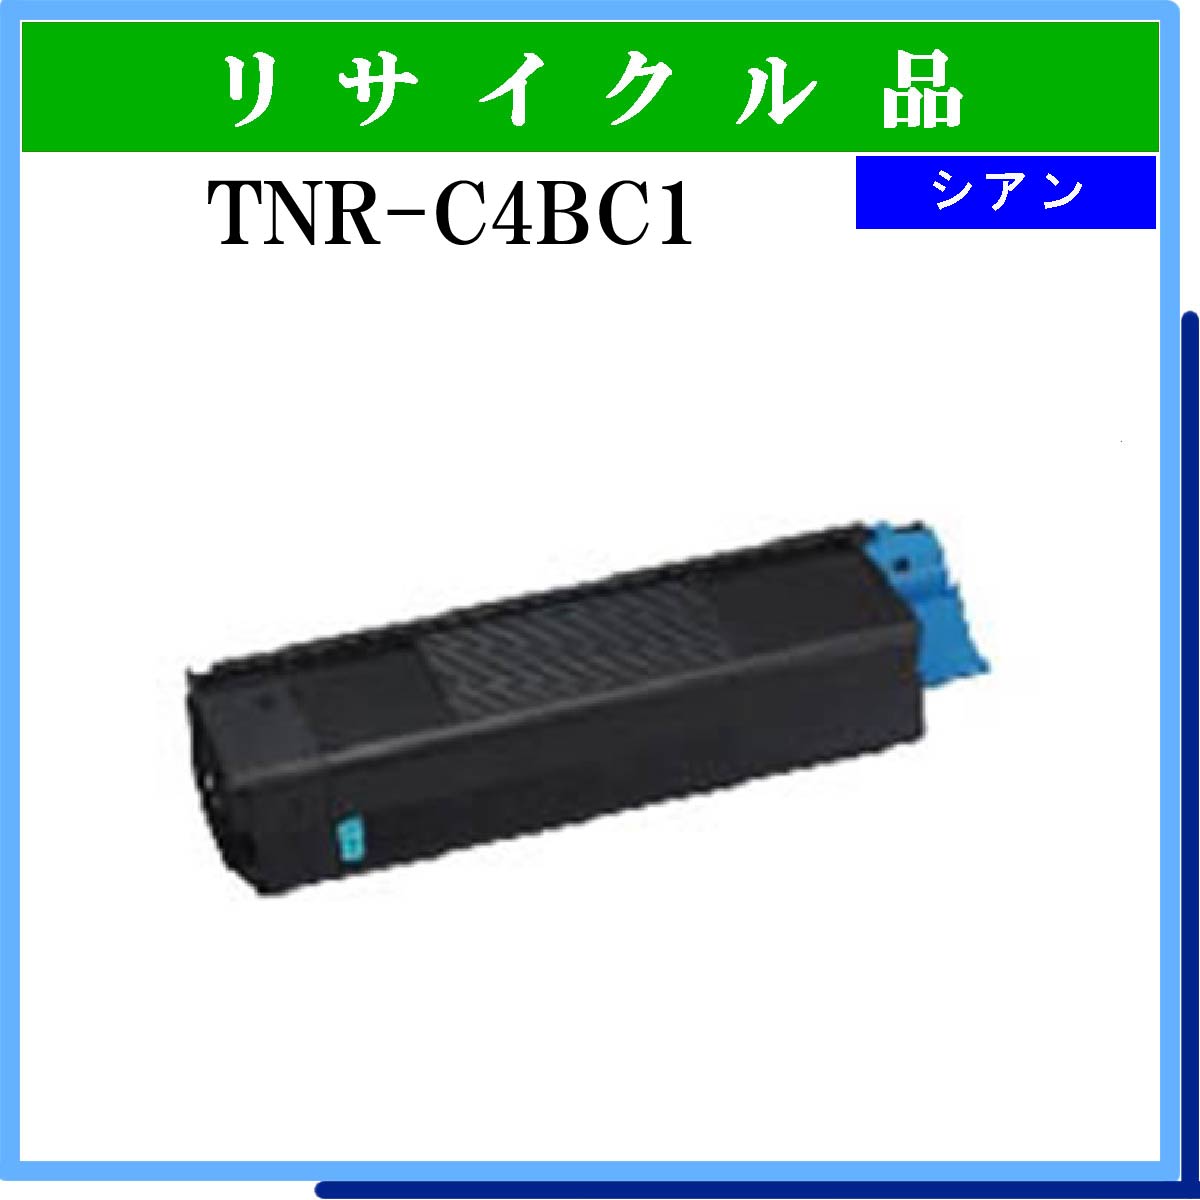 TNR-C4BC1